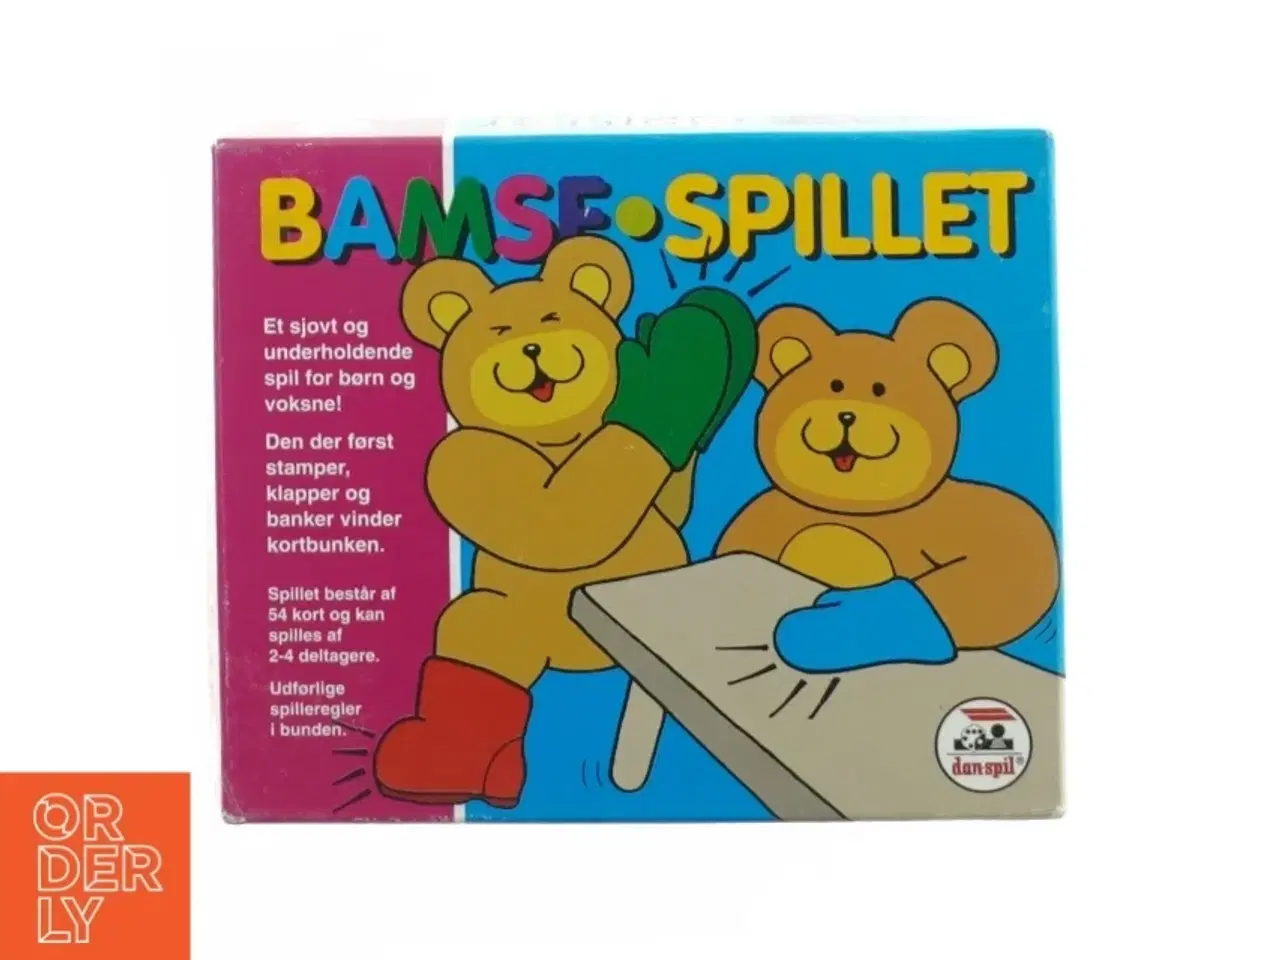 Billede 1 - Bamse spillet fra Dansk Spil (str. 17 x 14 cm)